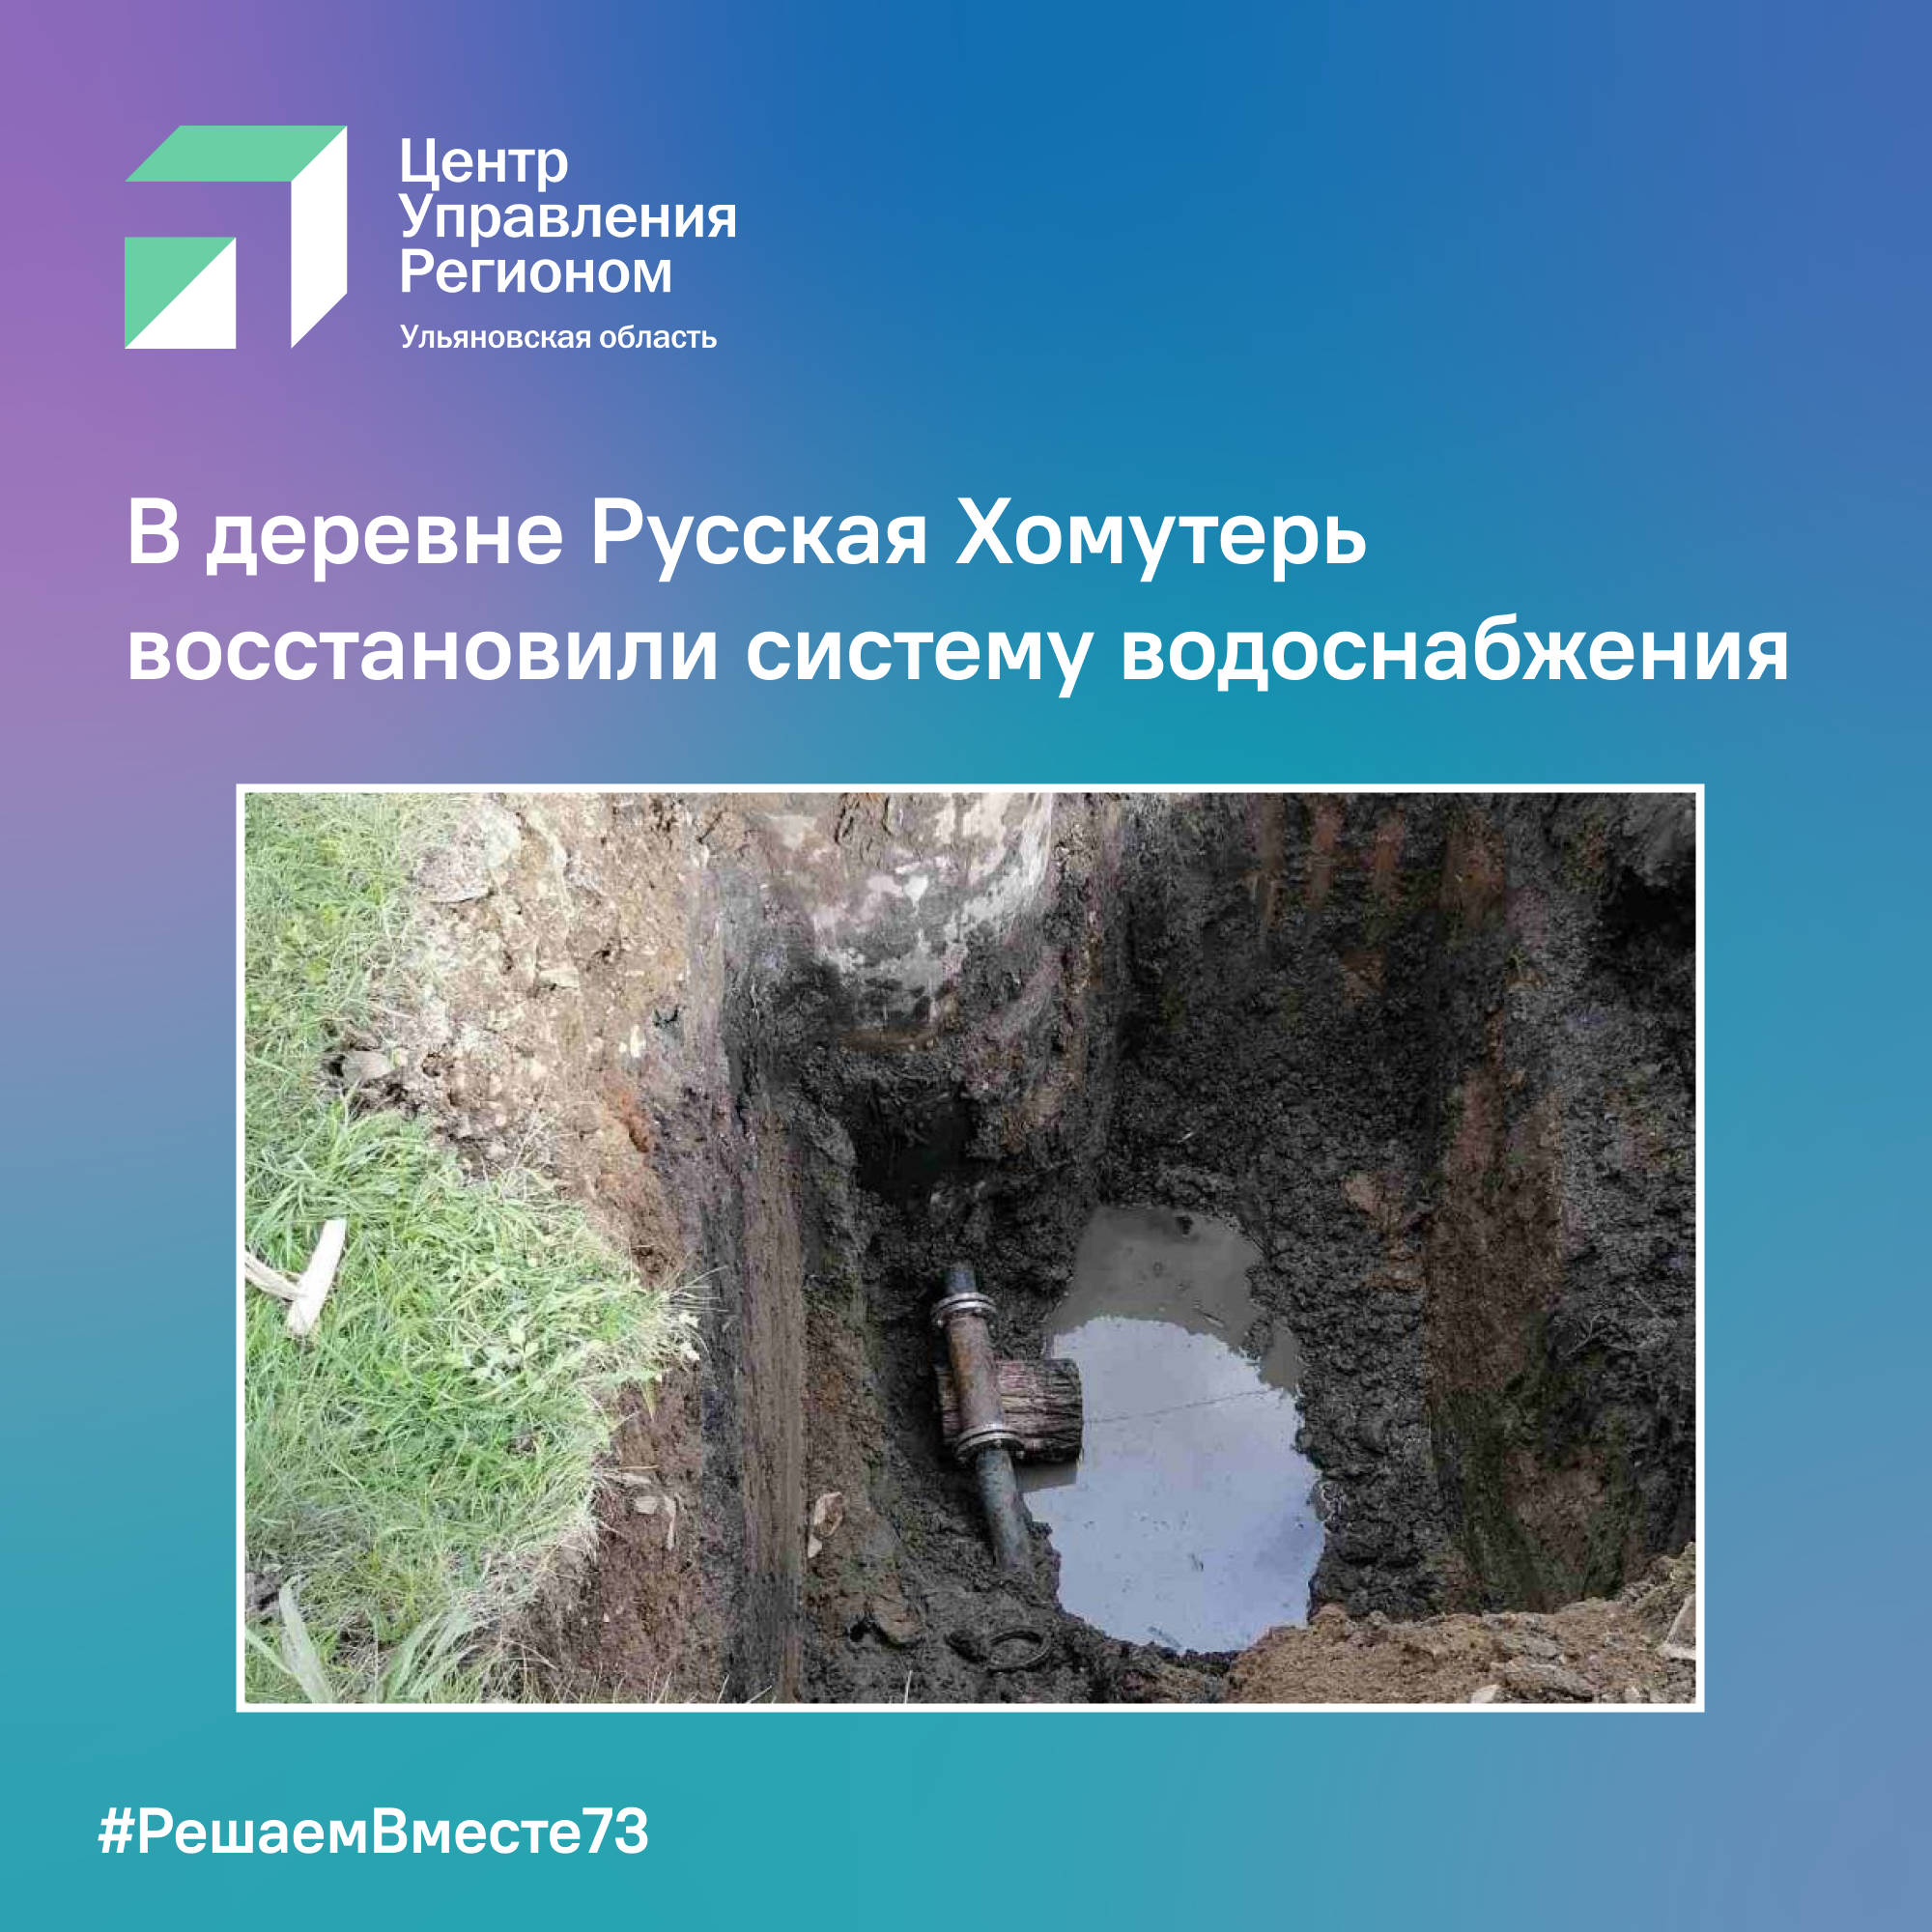 В деревне Русская Хомутерь восстановили систему водоснабжения.